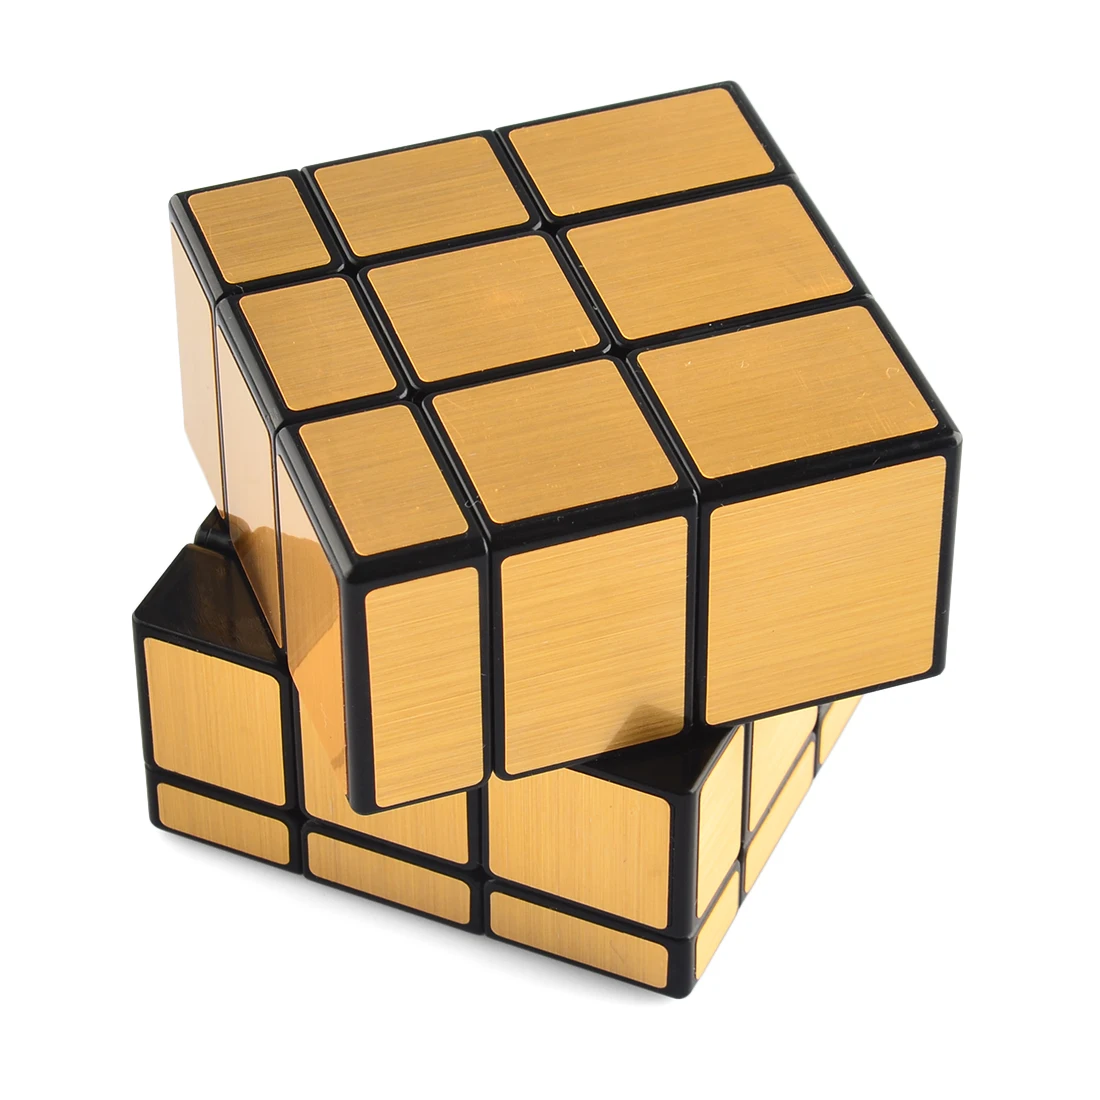 QiYi 3X3 зеркальные блоки волшебный куб пазл игрушки для начинающих лучшая игрушка для детей